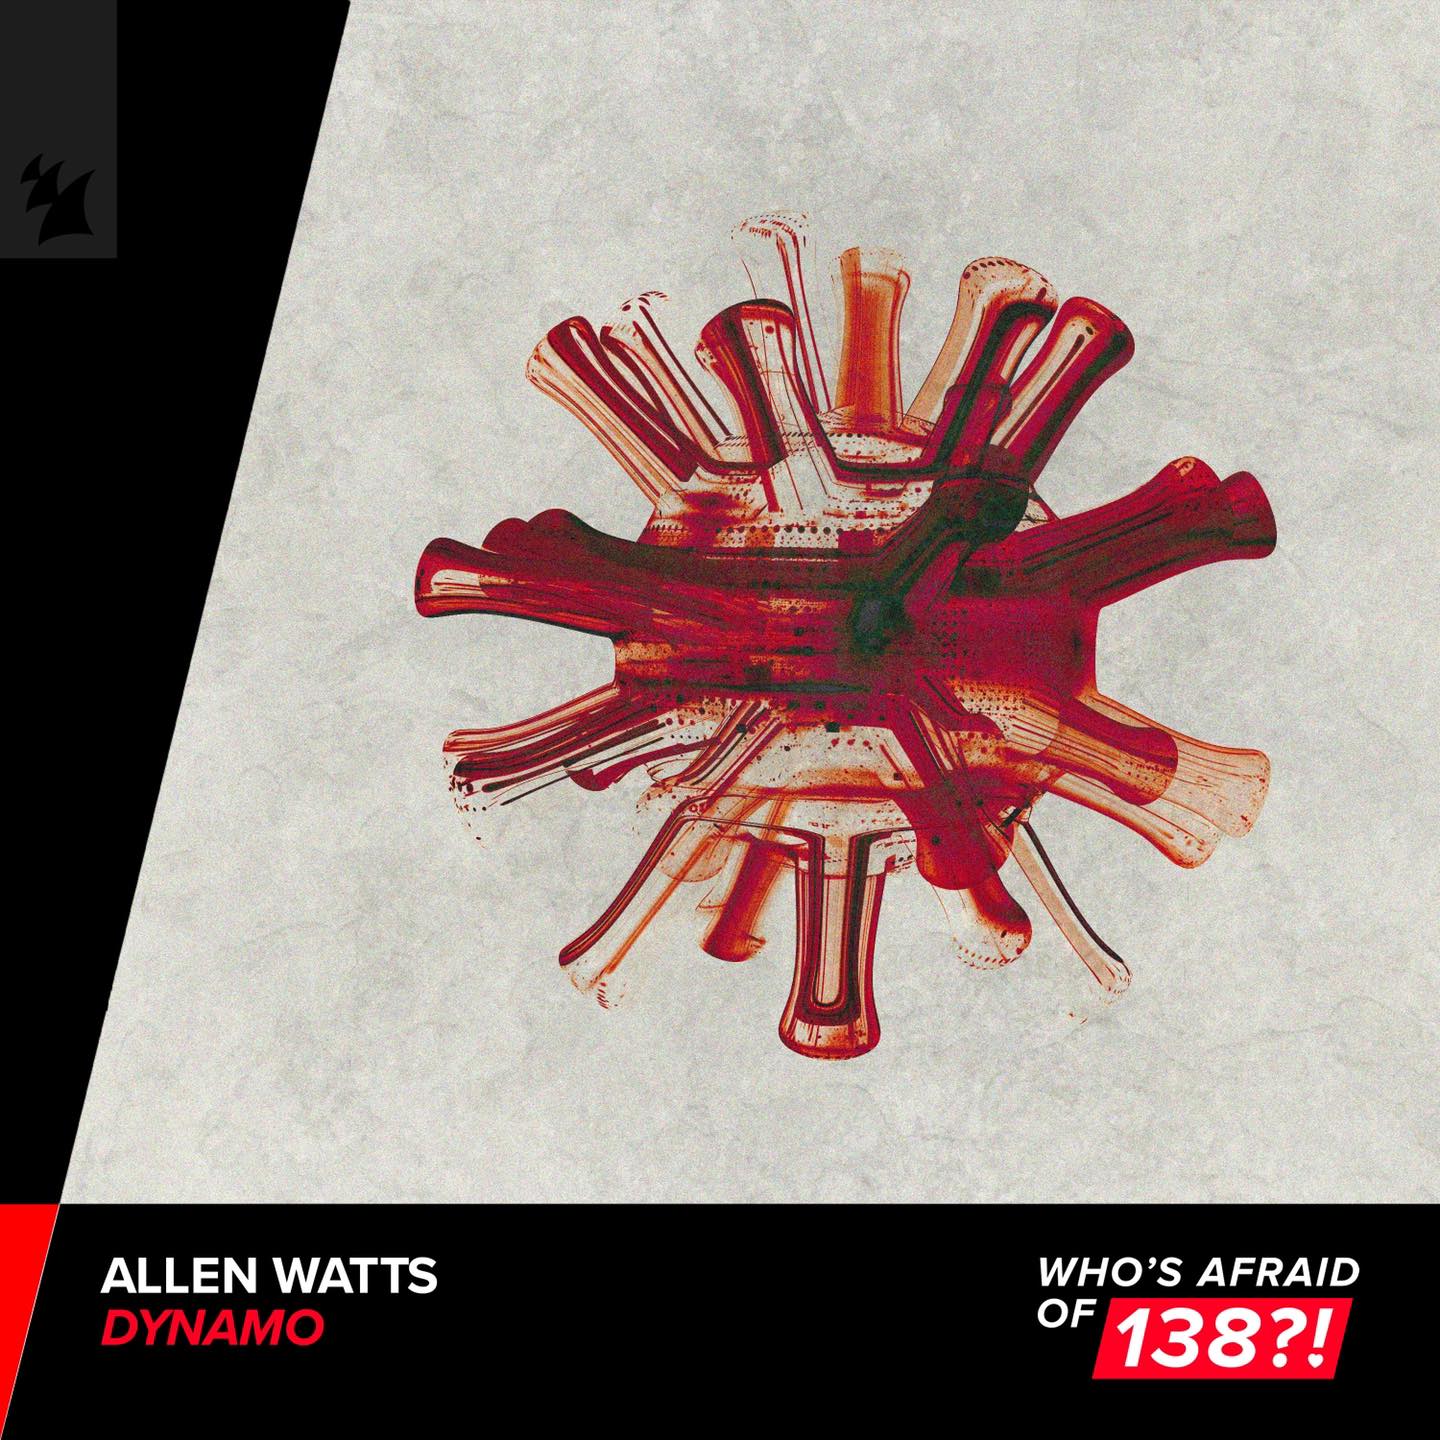 Allen watts. Allen Watts - Dynamo. Allen Watts Dynamo Extended. Allen Watts Uplifting Trance. Allen Watts Dynamo вокал.